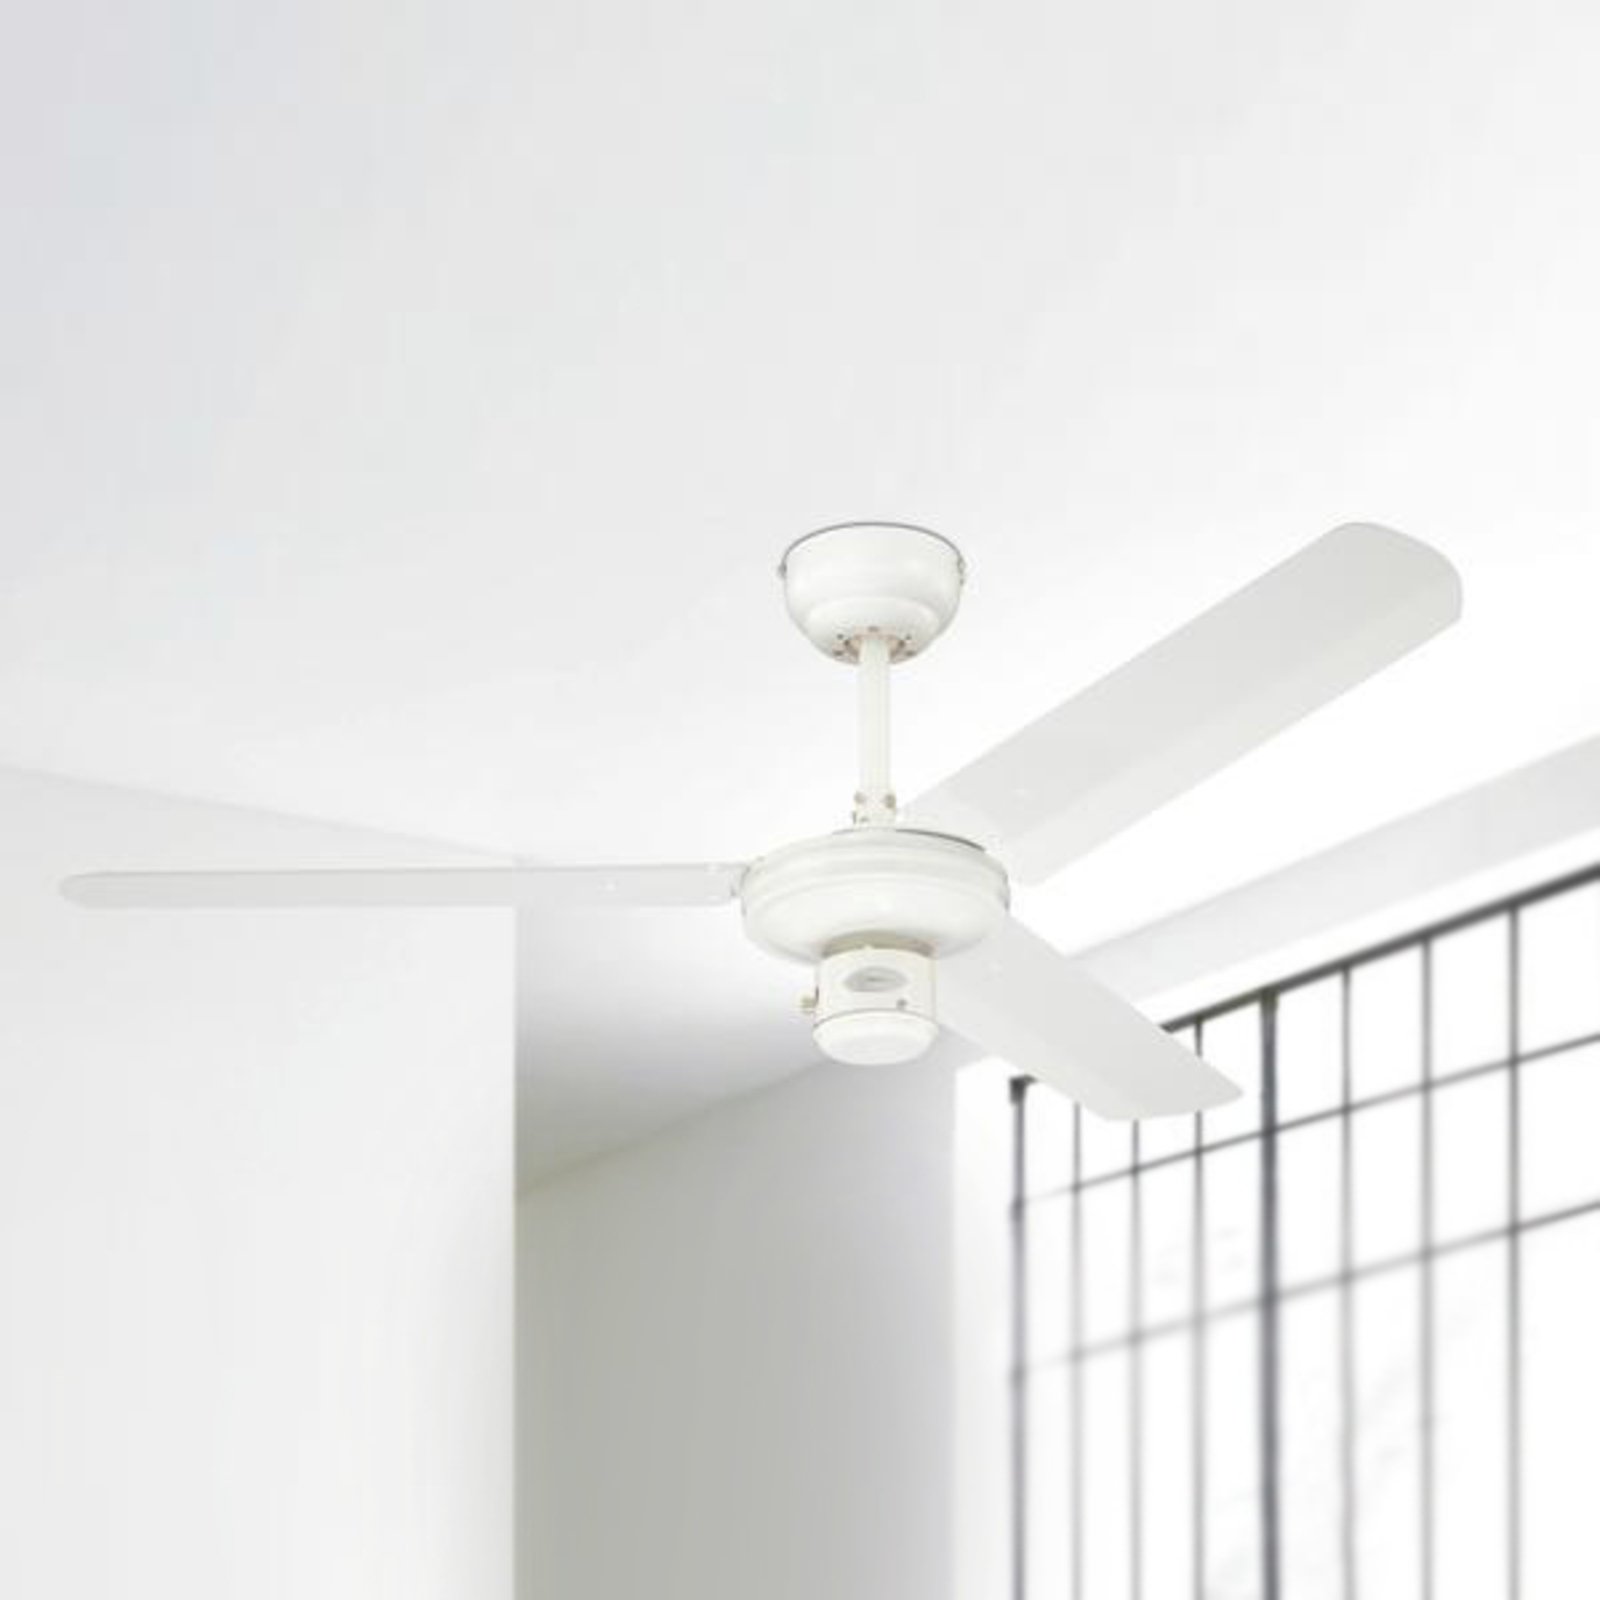 White industrial ceiling fan